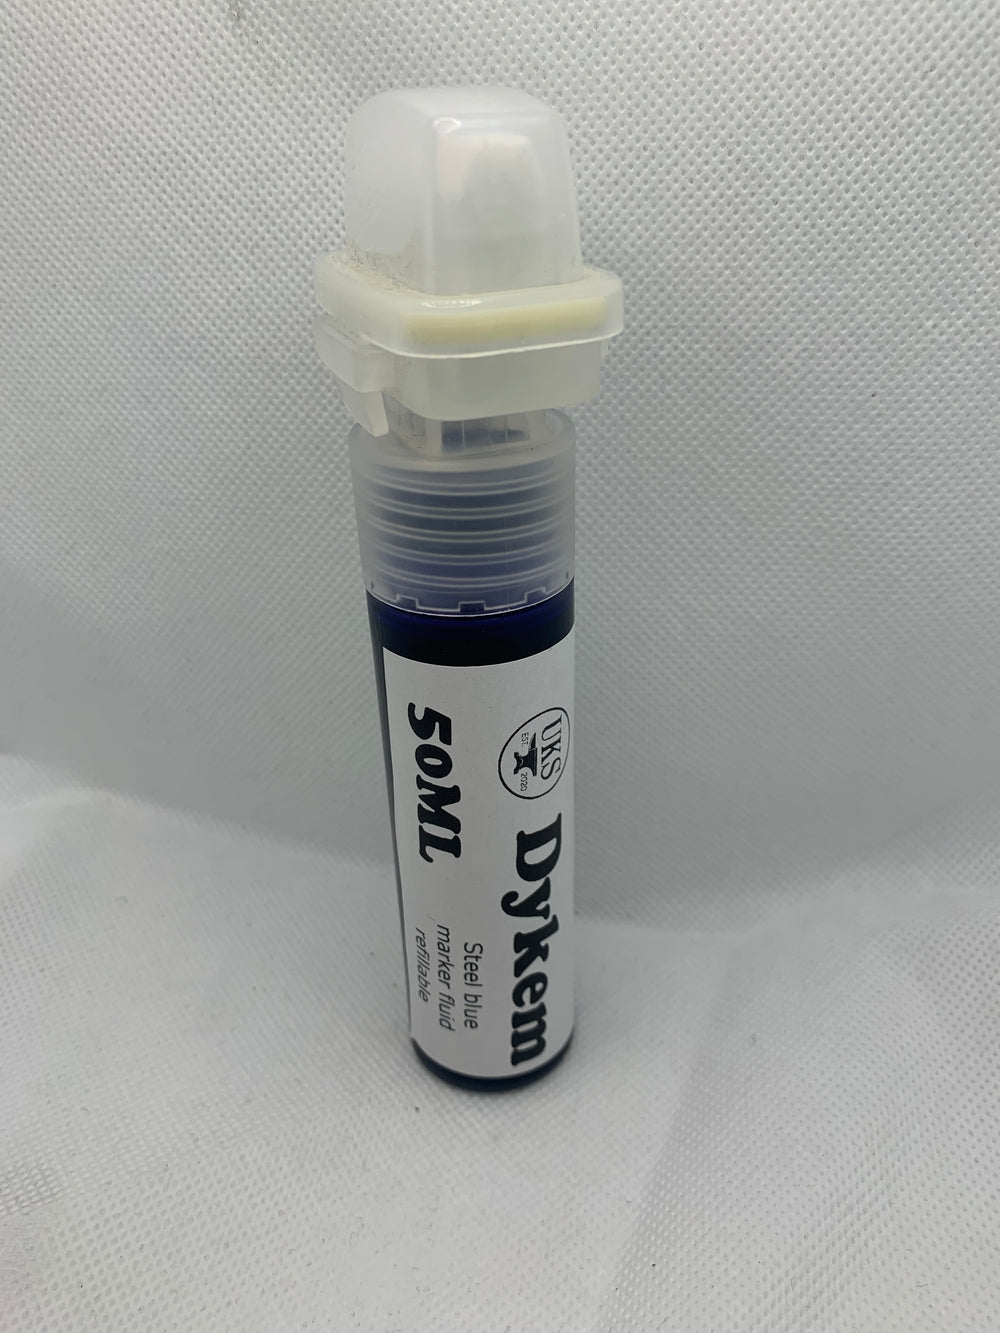 30mm 50ml Dykem Marker fluid refillable pen / marker